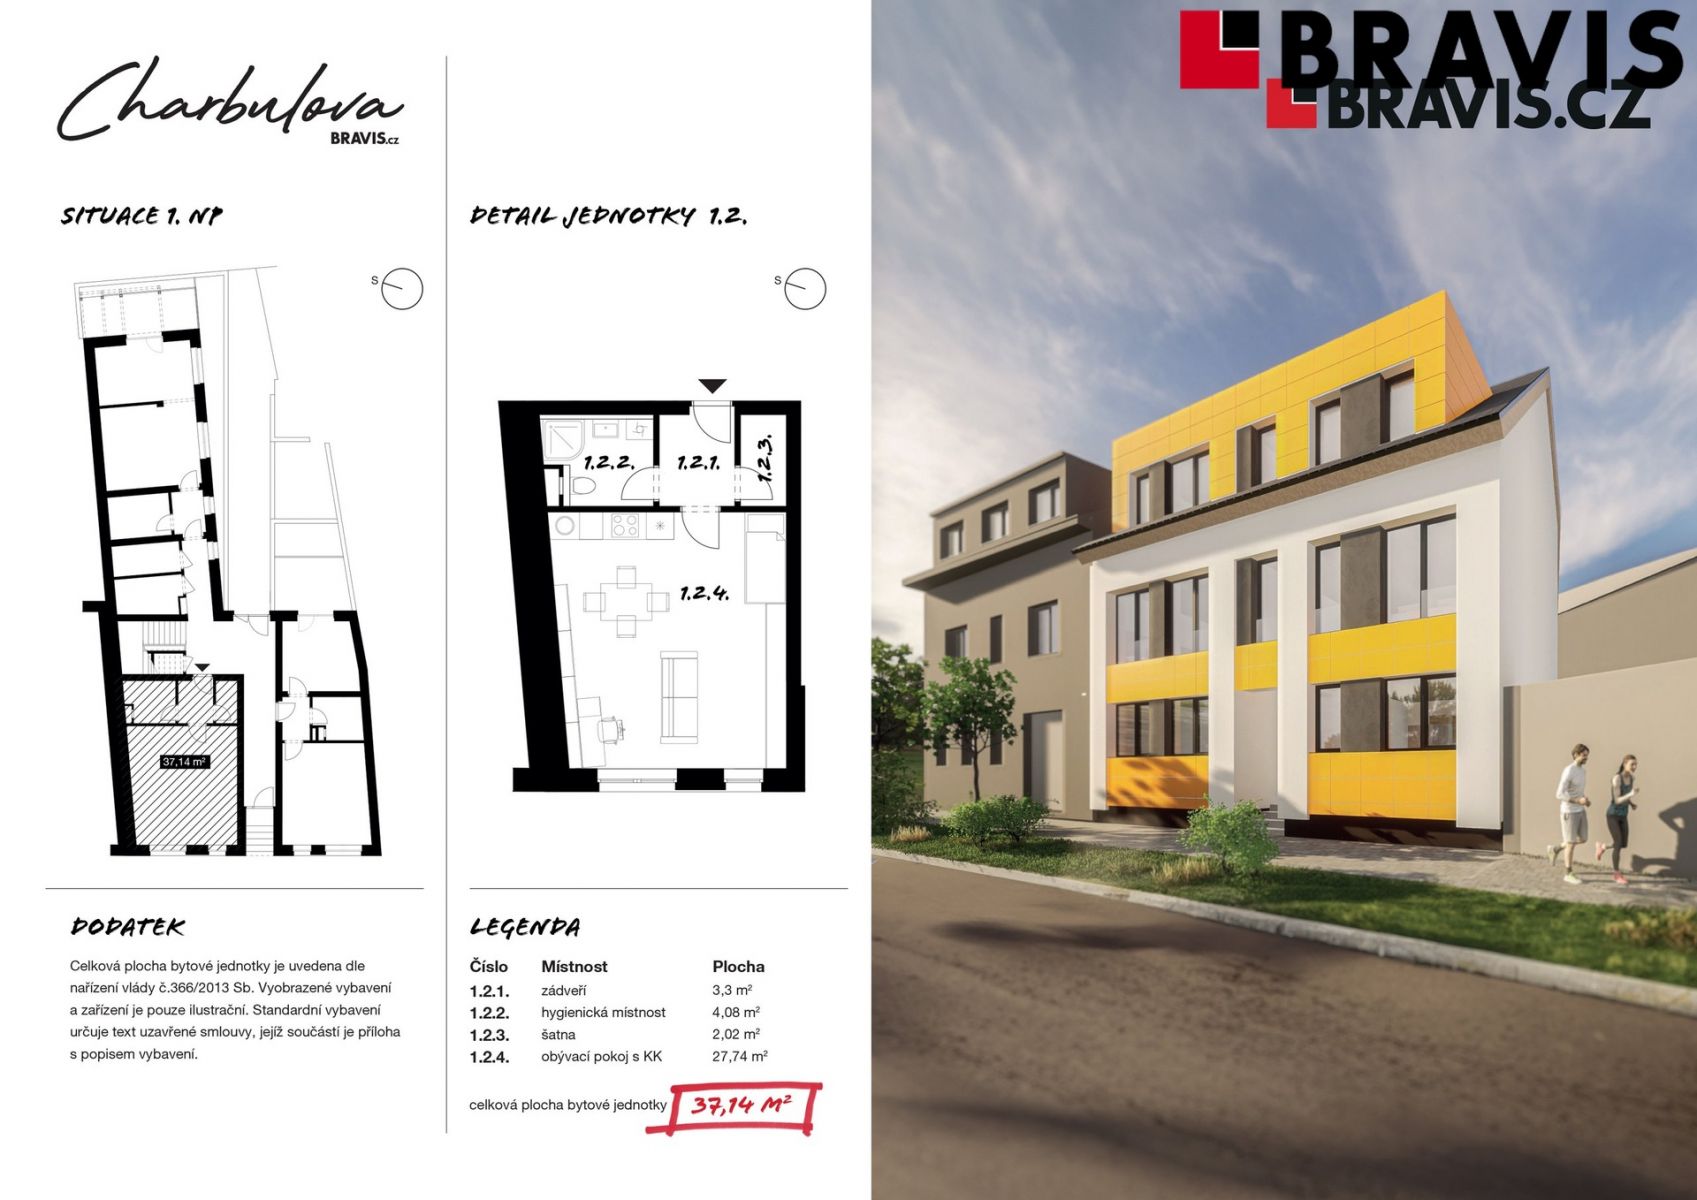 Prodej novostavby bytu 1+kk, ulice Charbulova, Brno - Černovice, možnost parkování, obrázek č. 2